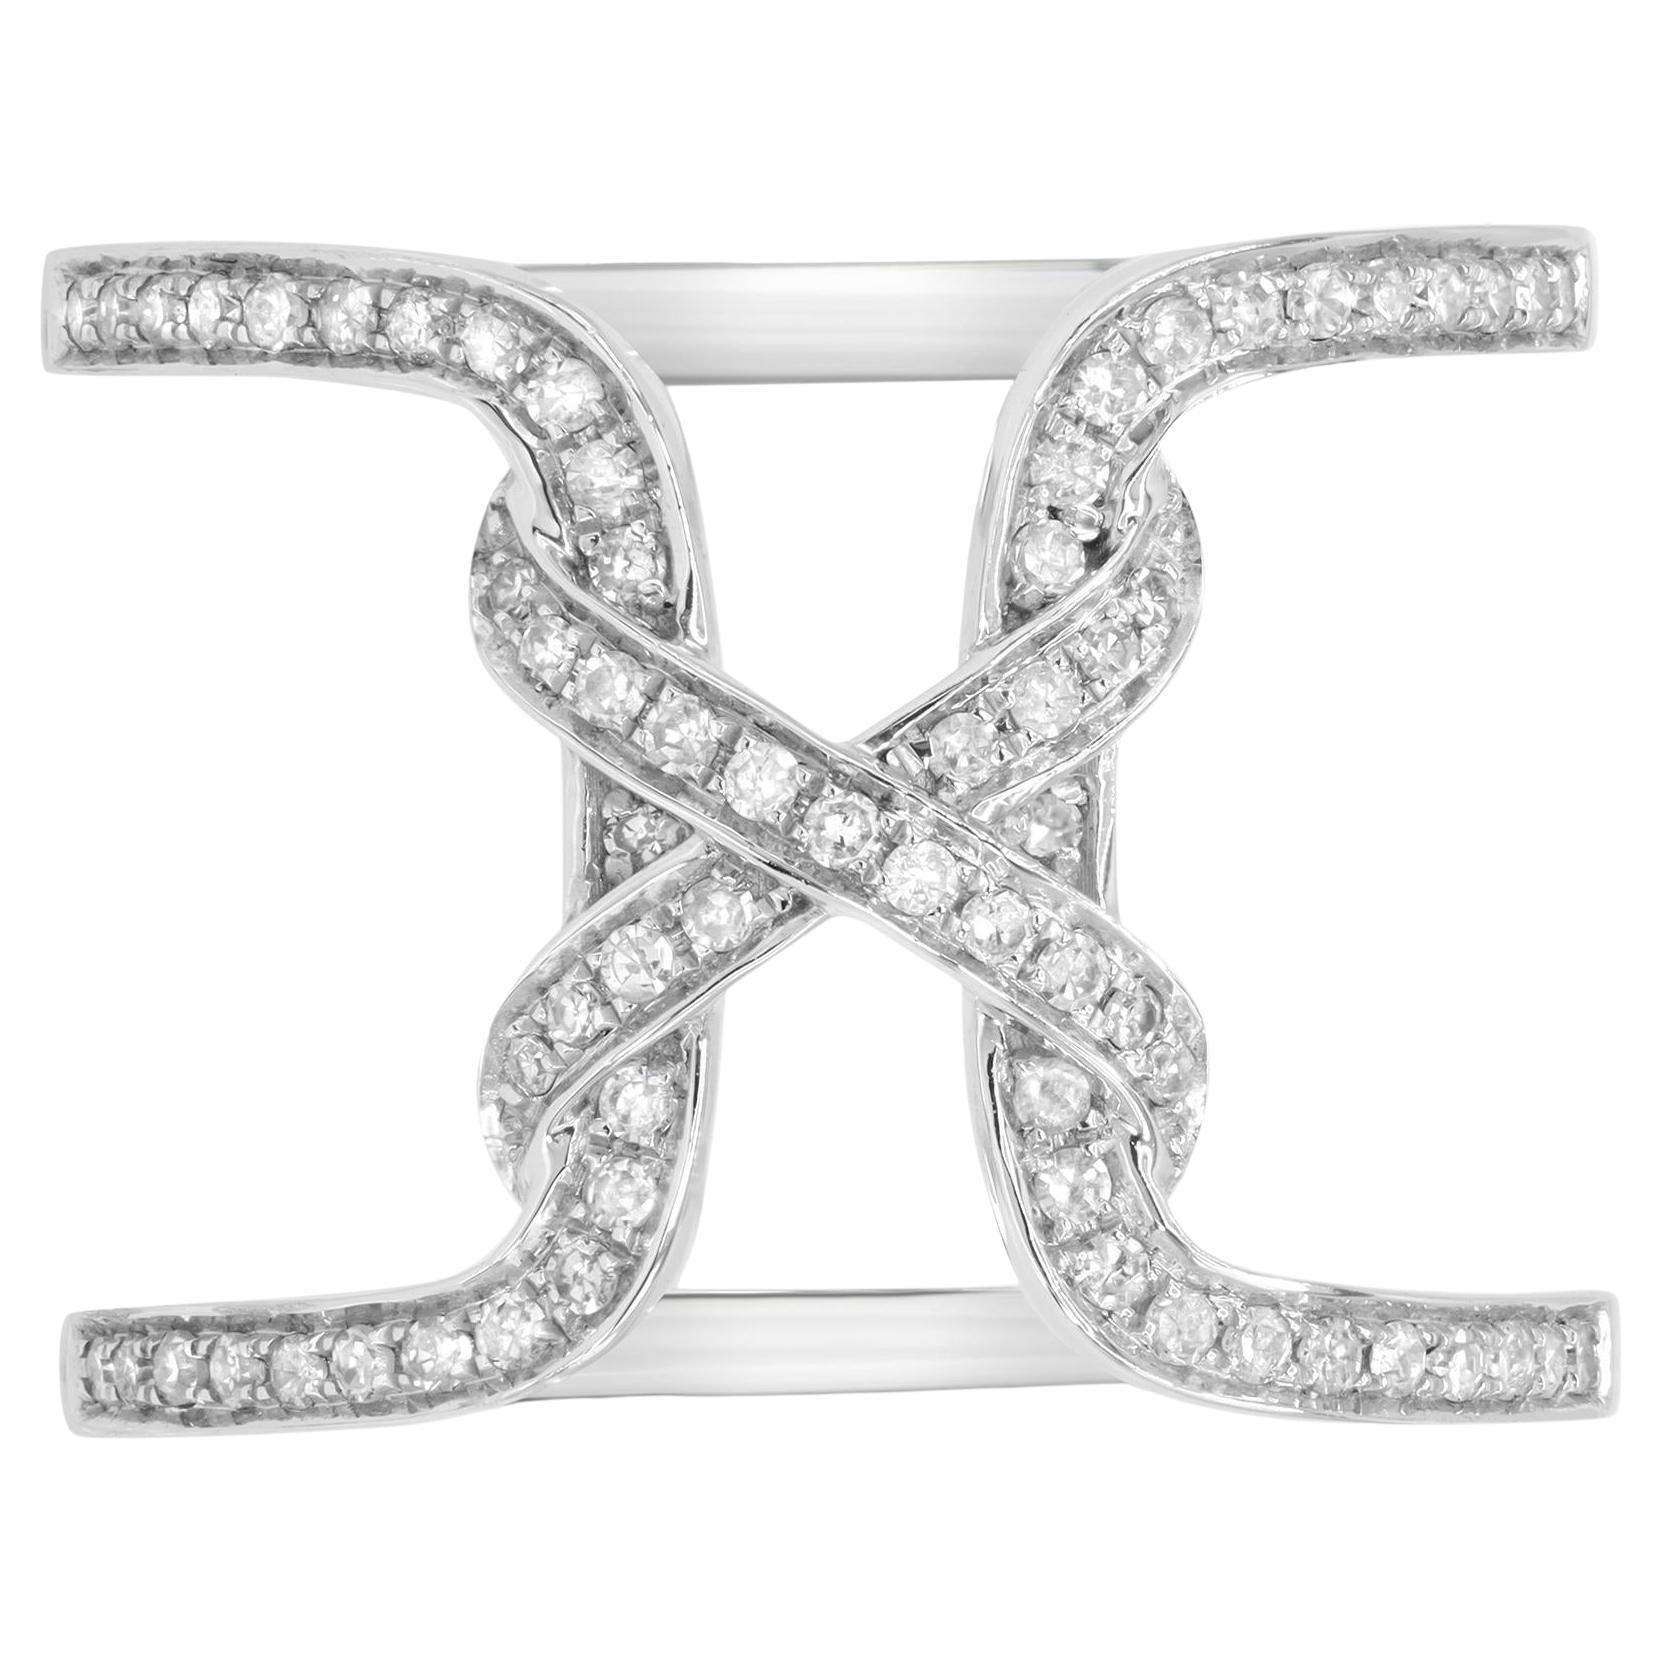 Rachel Koen Grande bague fantaisie ouverte fantaisie en or blanc 18 carats avec diamants 0,31 carat poids total